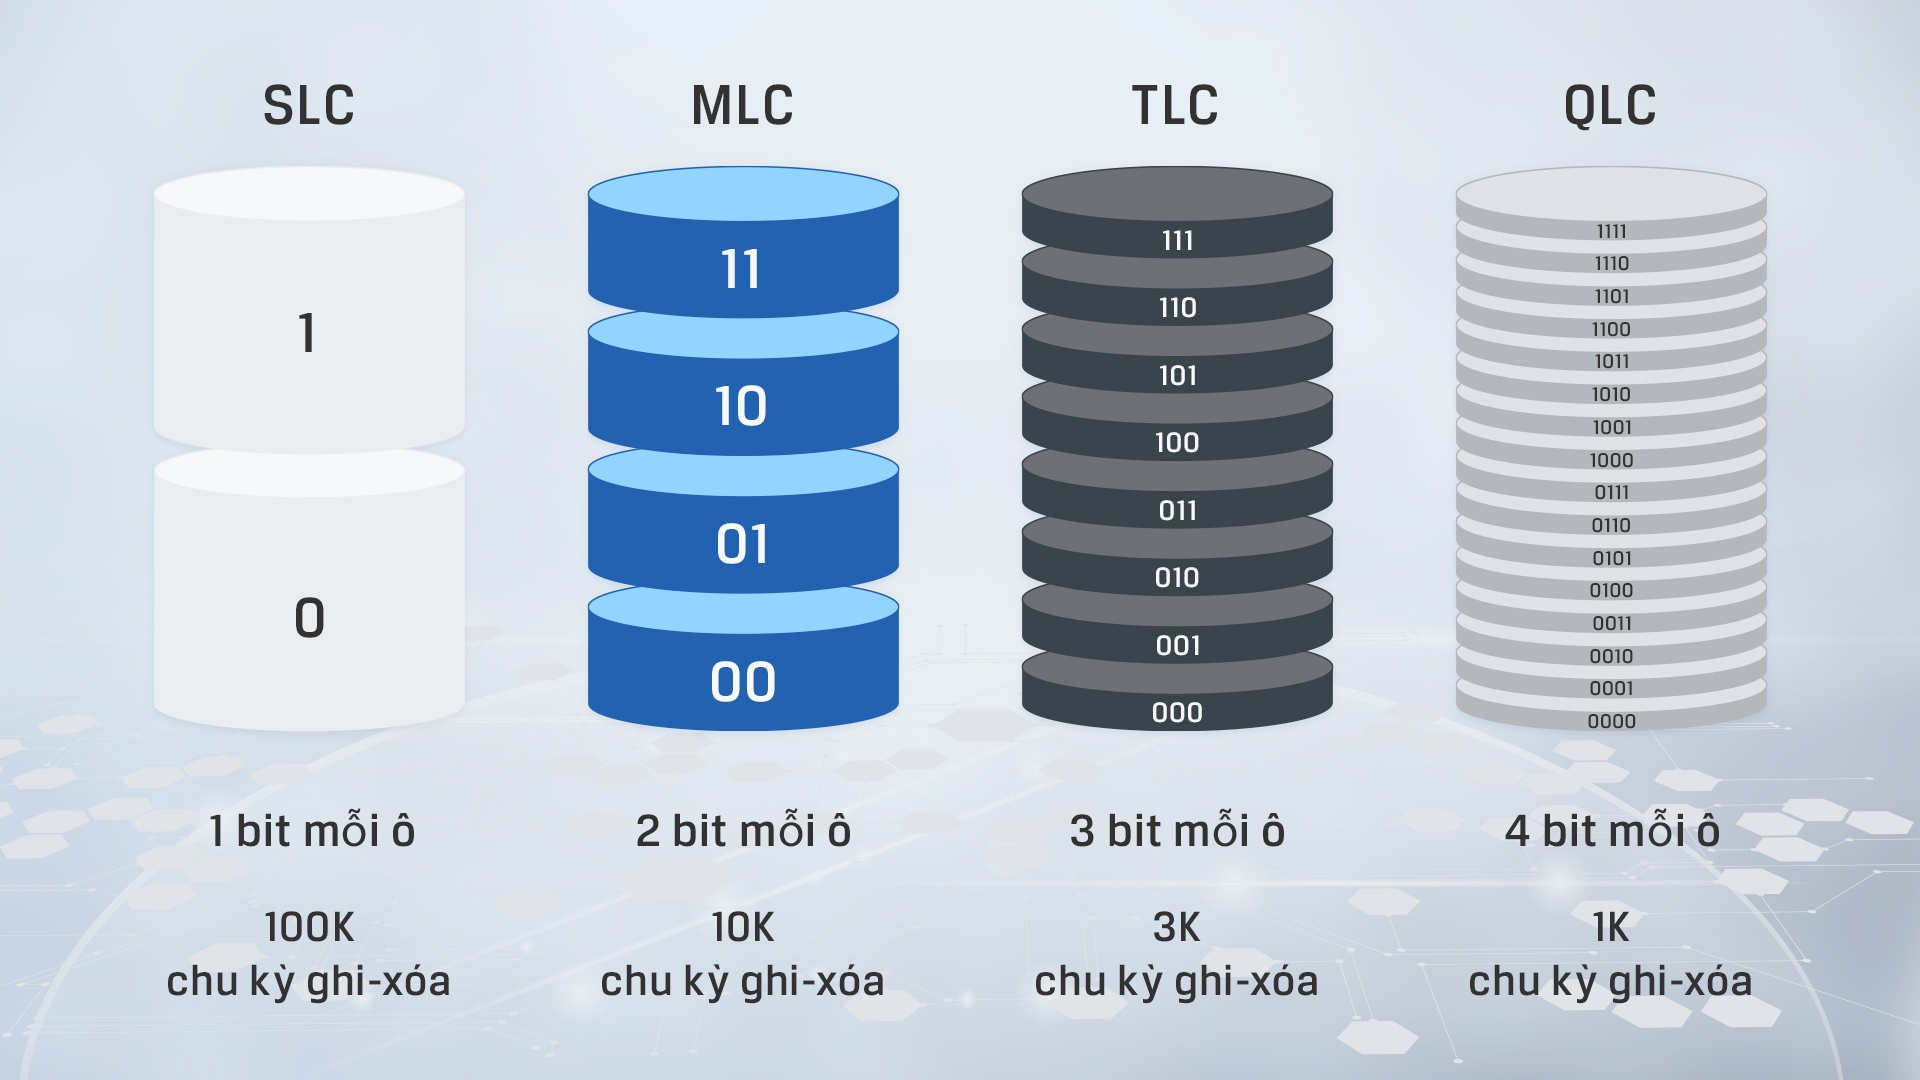 đồ họa thông tin thể hiện sự khác biệt chính giữa các loại NAND khác nhau